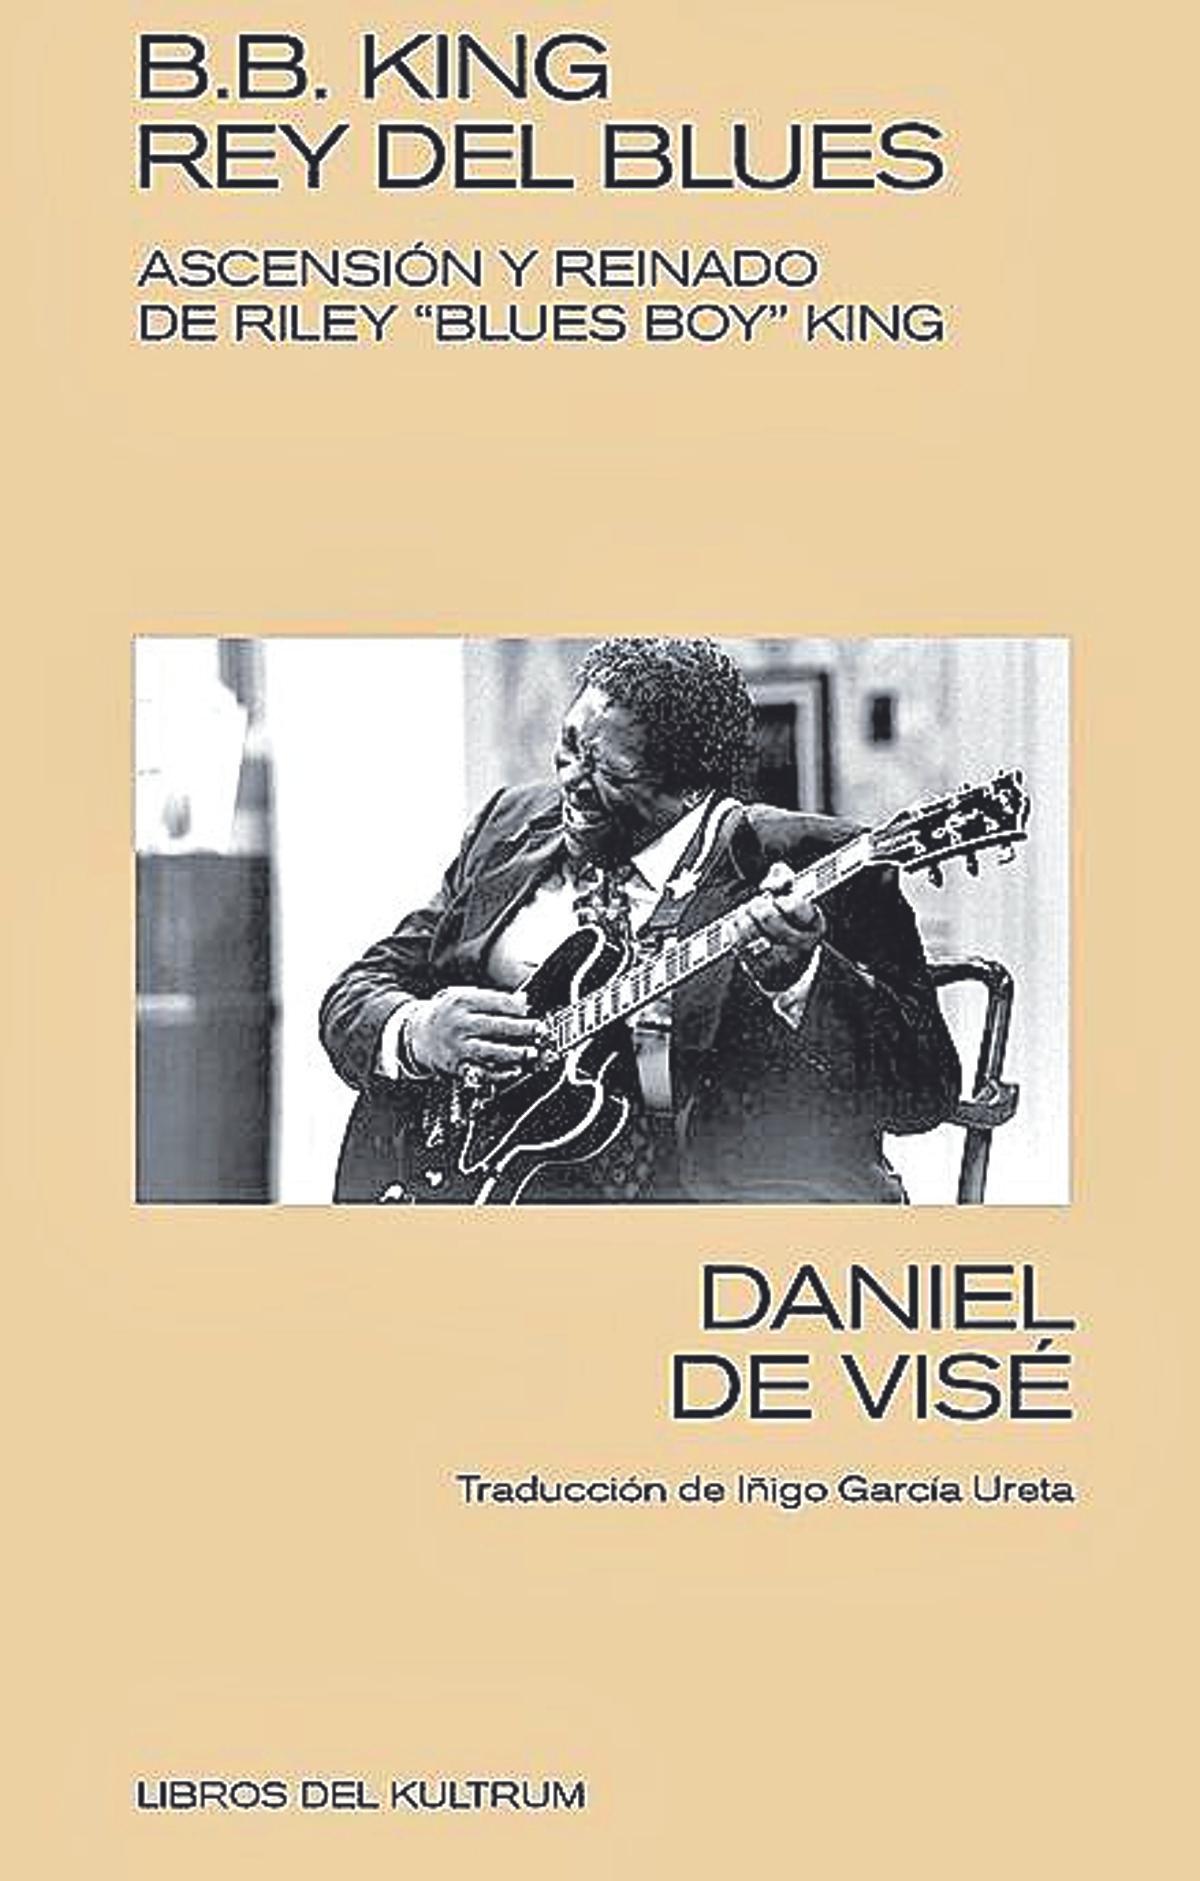 Daniel De Visé  B.B. King, rey del blues   Editorial: Libros del Kultrum Traducción:Iñigo García Ureta  640 páginas / 28,00 euros